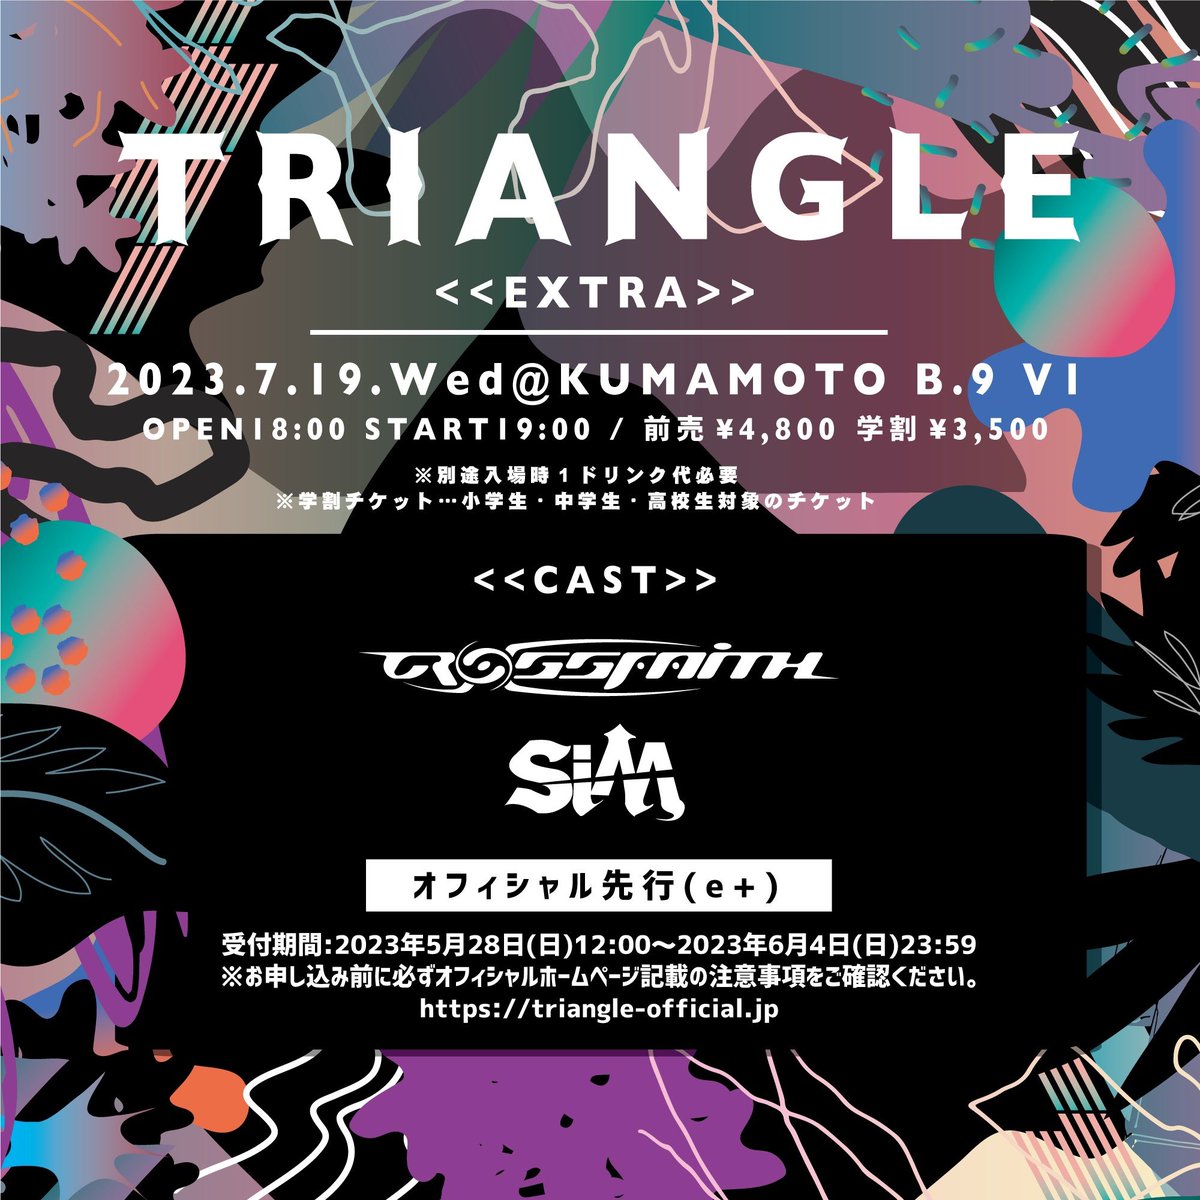 2023年7/19(水)開催
「TRIANGLE EXTRA」
at 熊本 B.9 V1
出演決定！！

triangle-official.jp

#SiM
#triangleextra